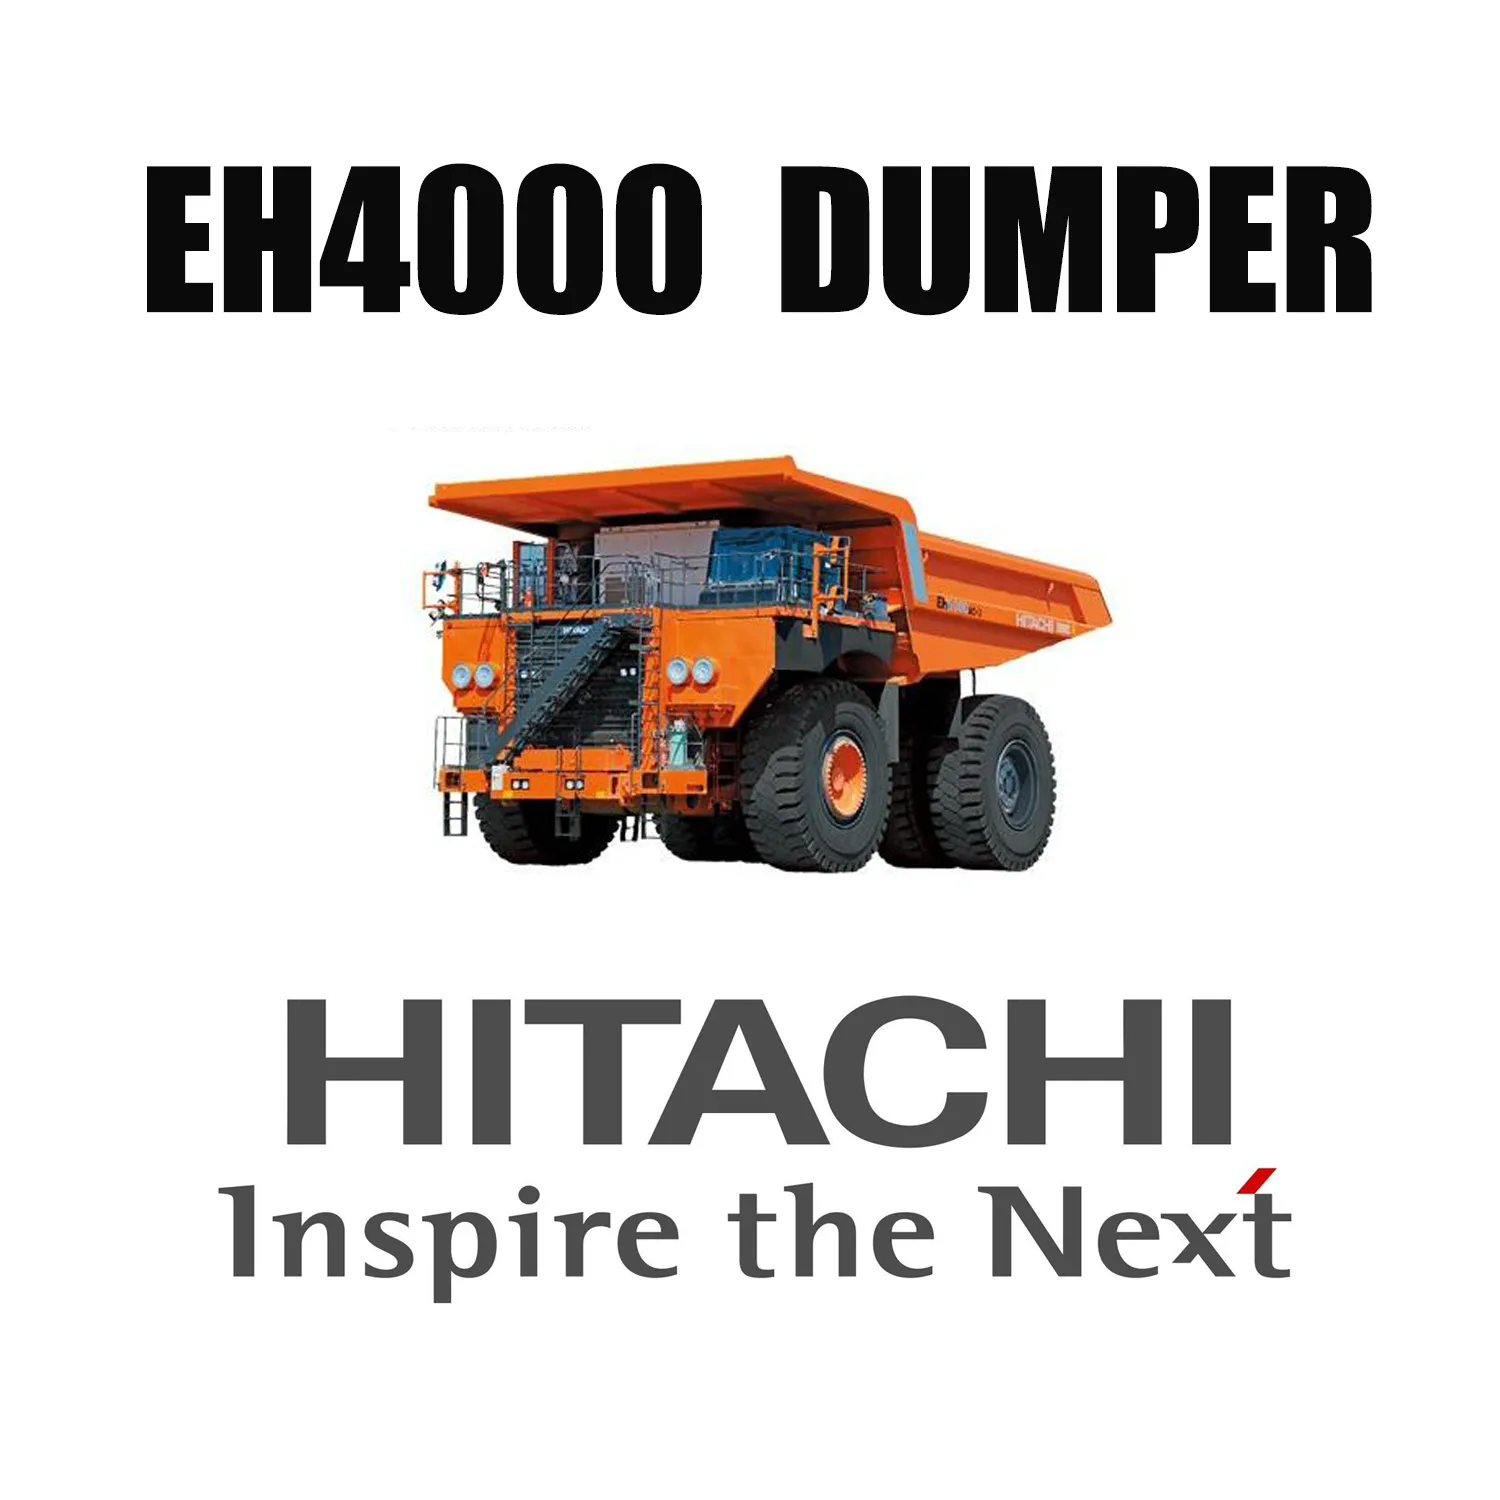 Xe tải tự đổ cứng nhắc HITACHI EH4000 được trang bị lốp Earthmover khai thác 46 / 90R57